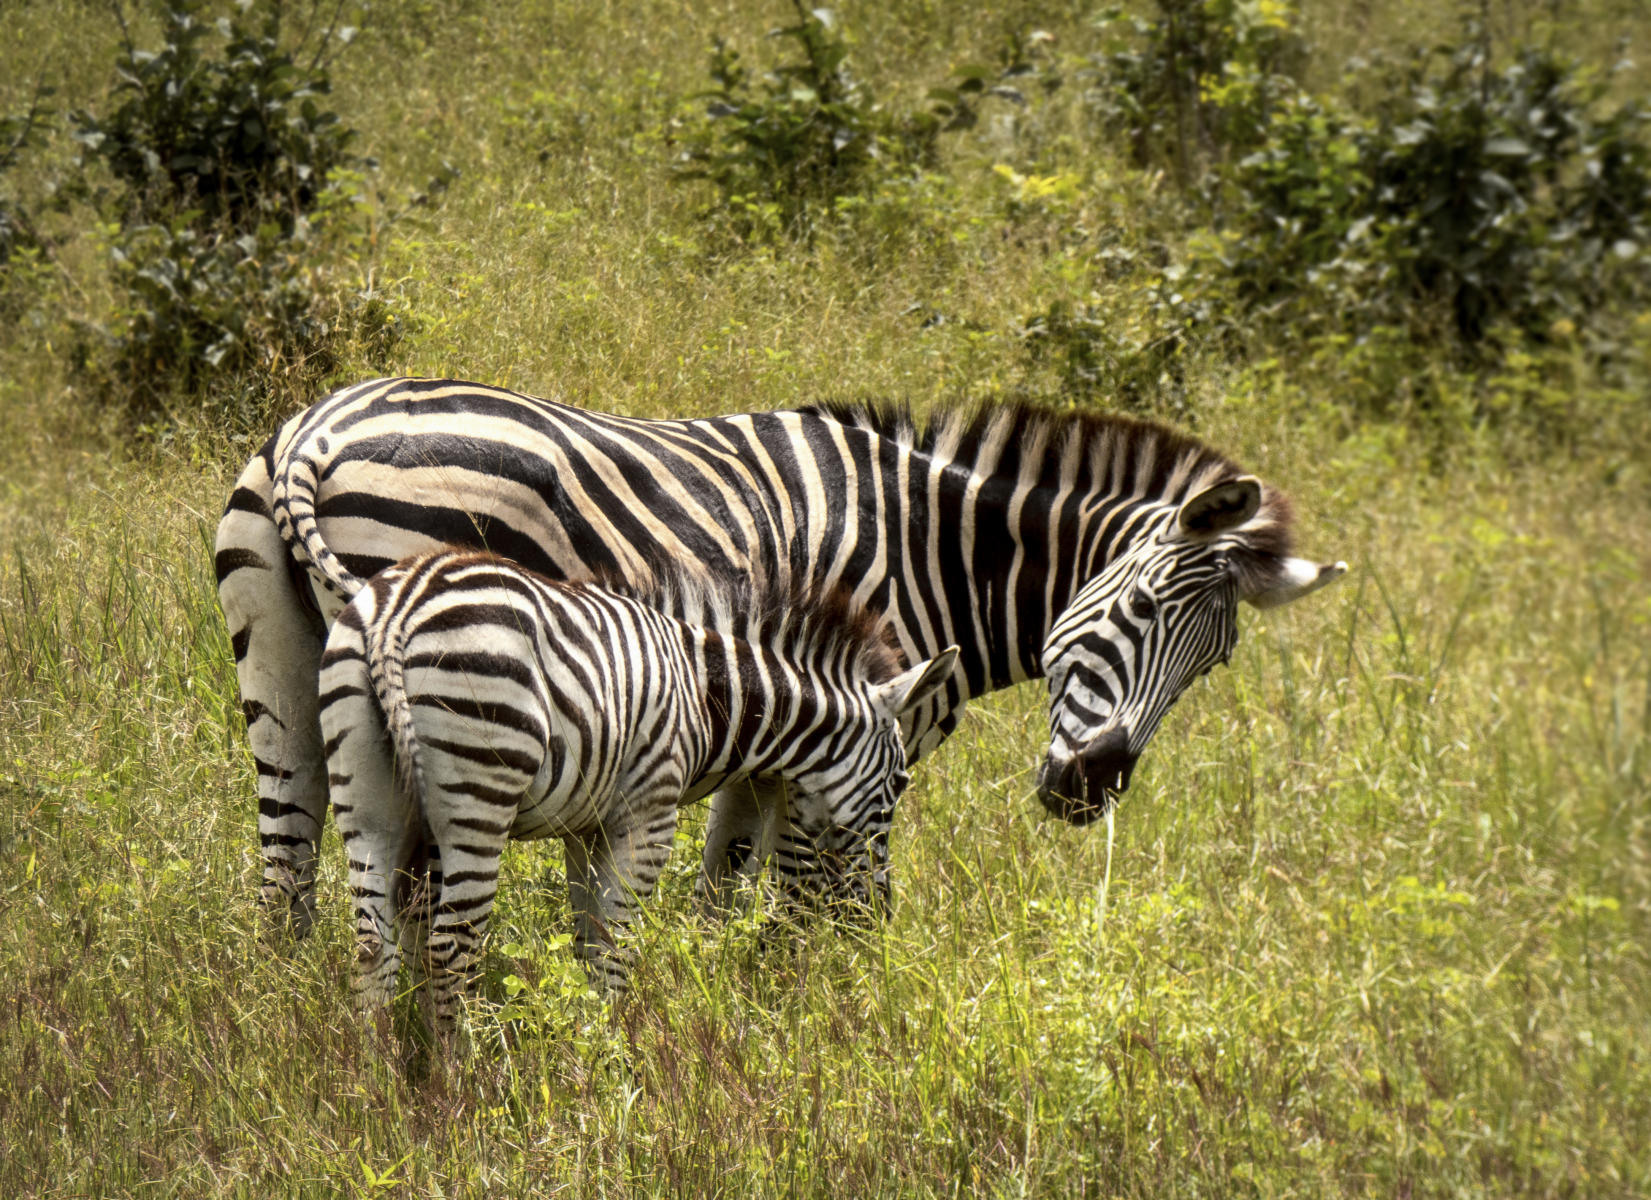 Zebra and Baby